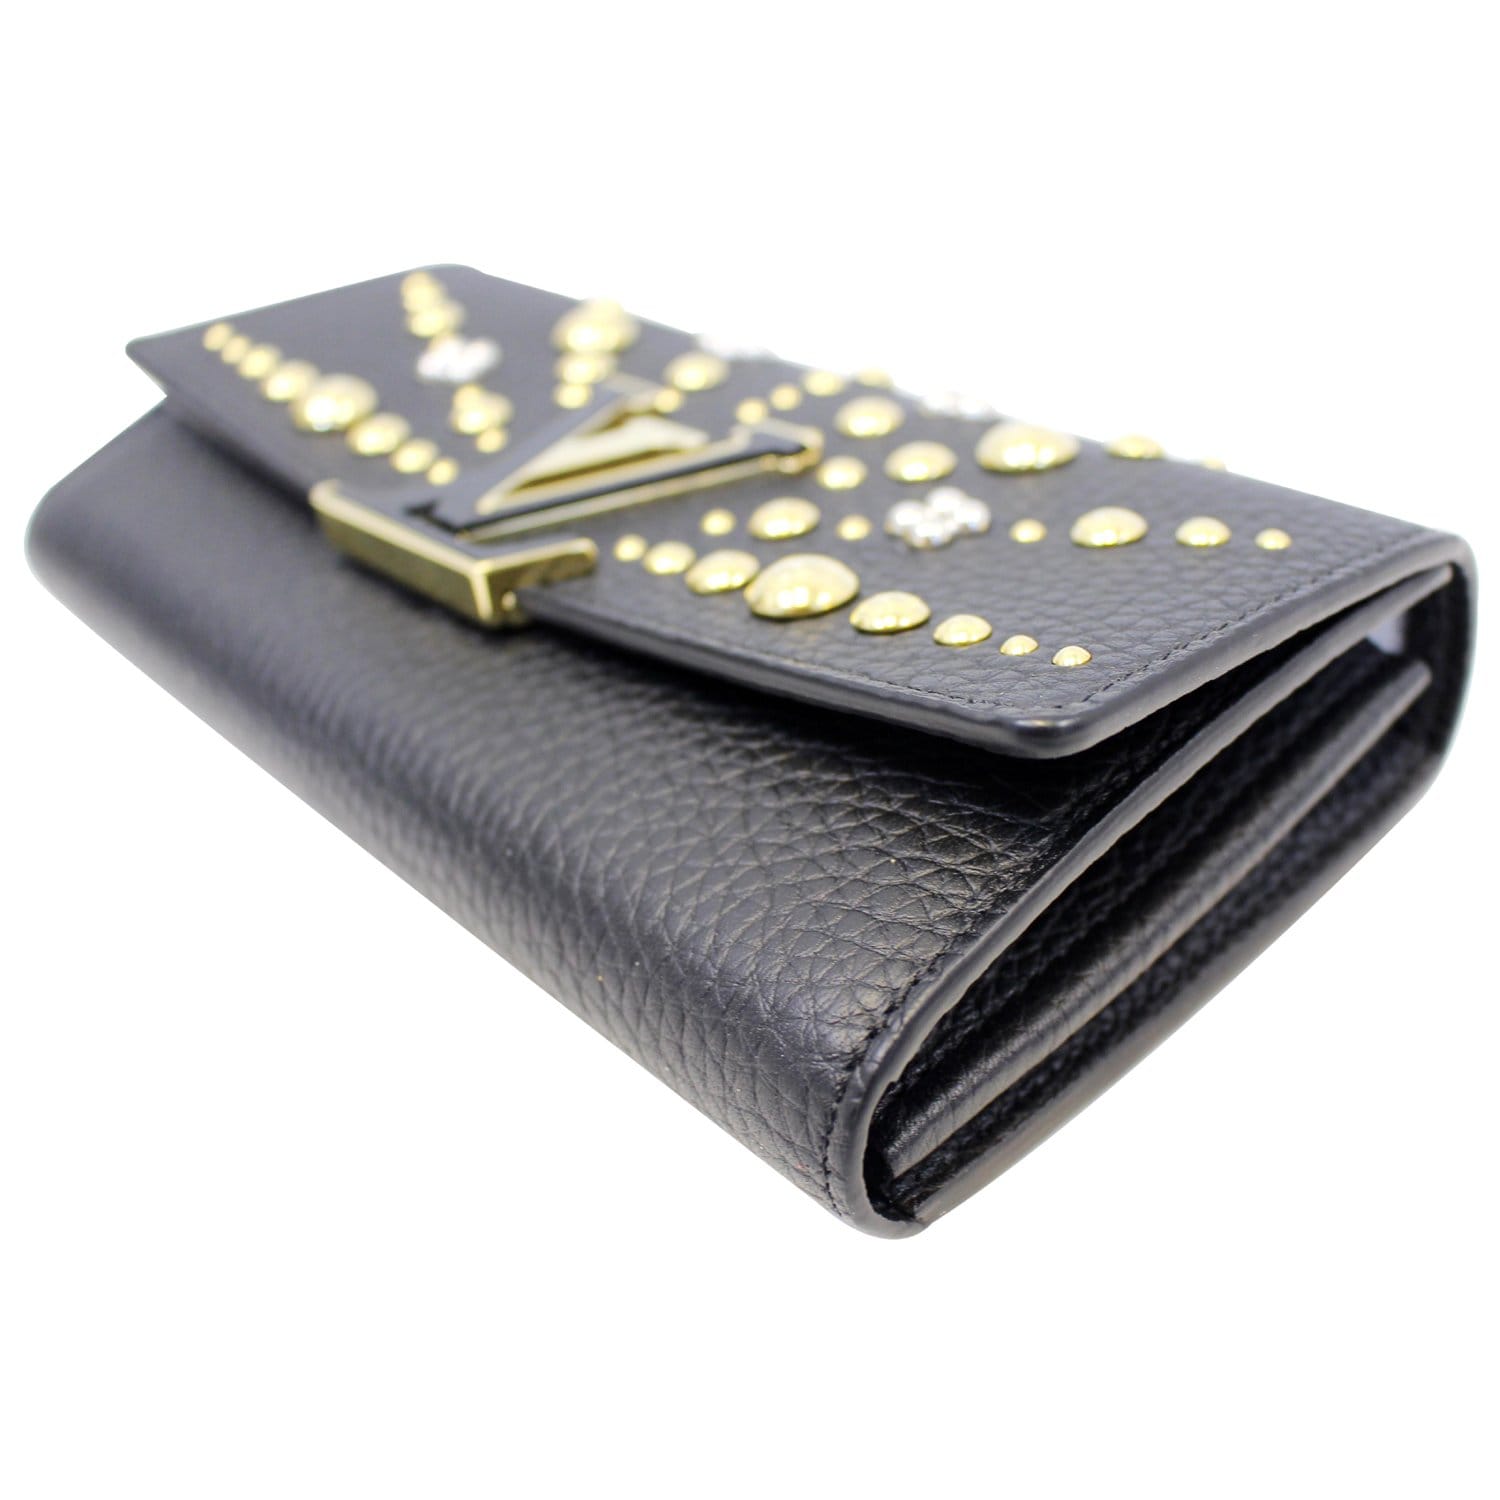 Louis Vuitton Black Taurillon Leather Capucines Compact Wallet